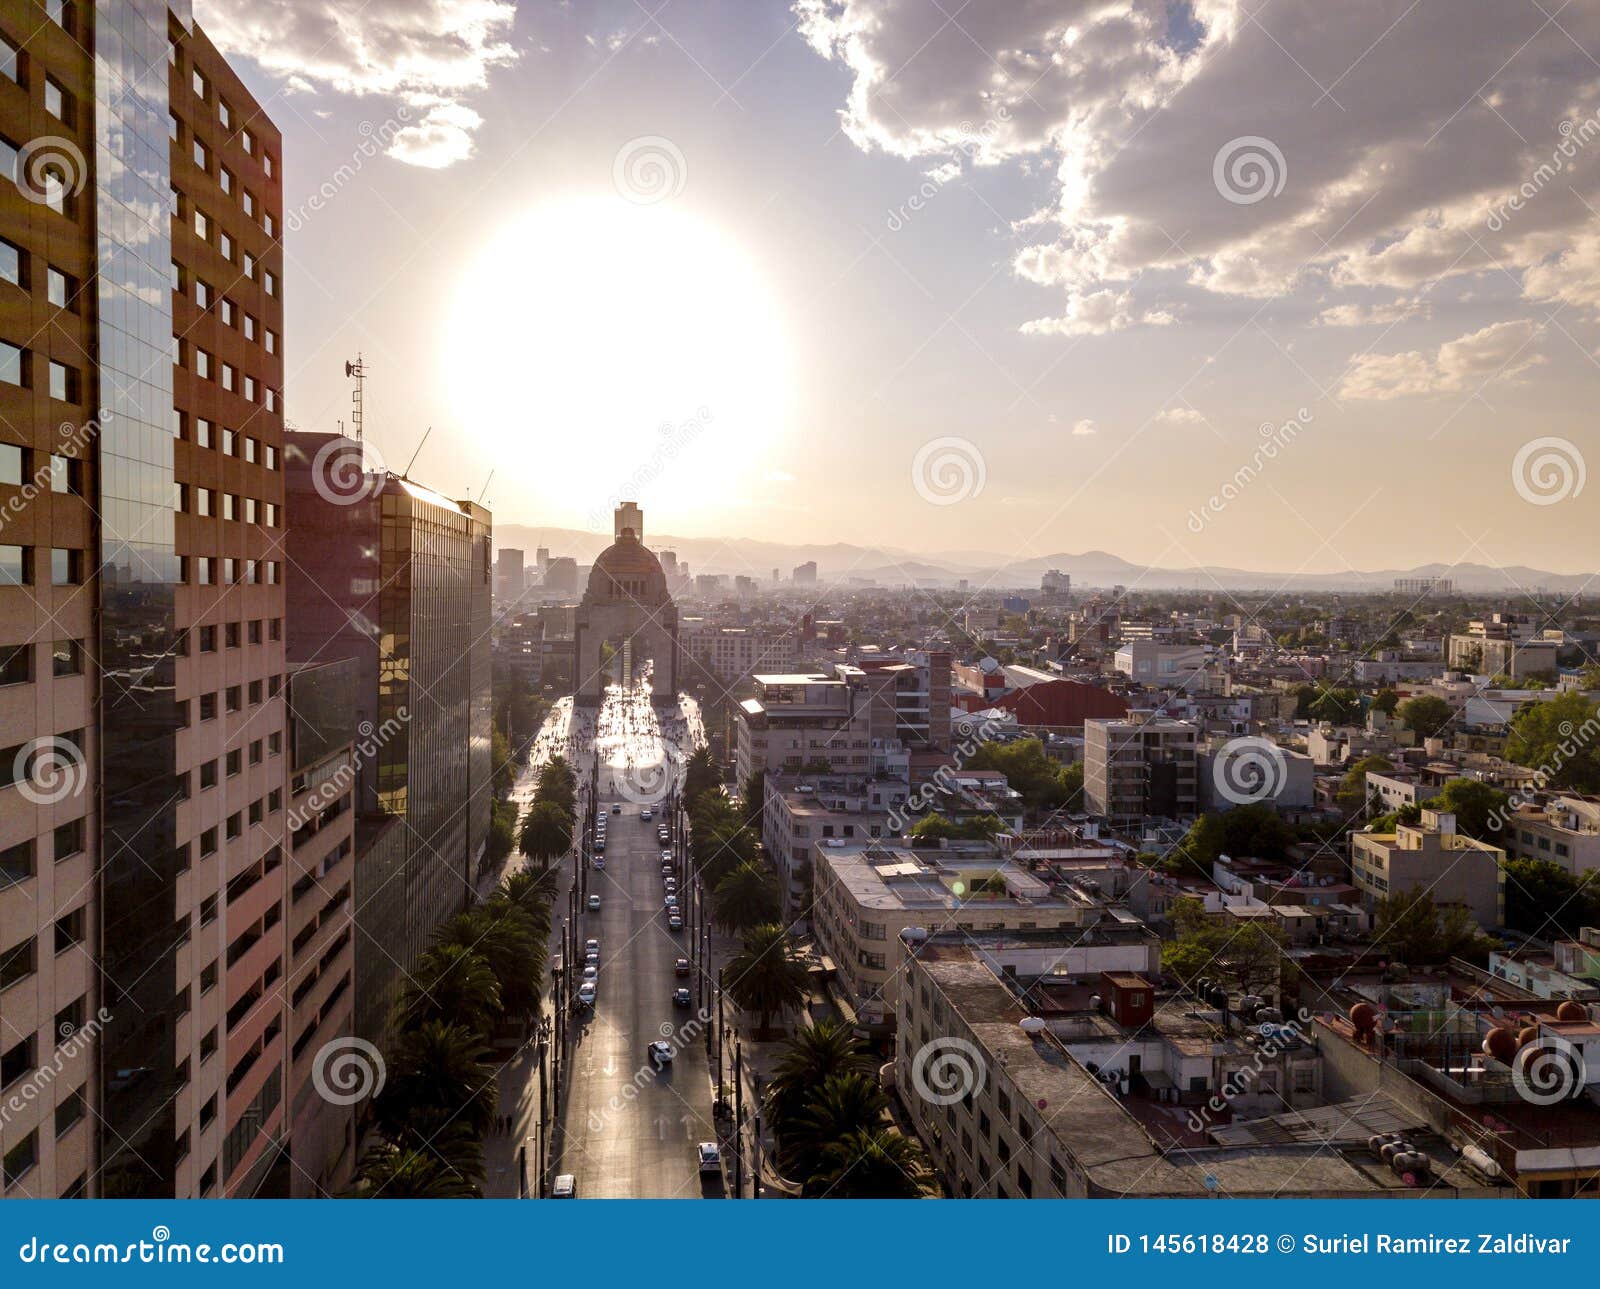 monumento a la revoluciÃÂ³n mexicana